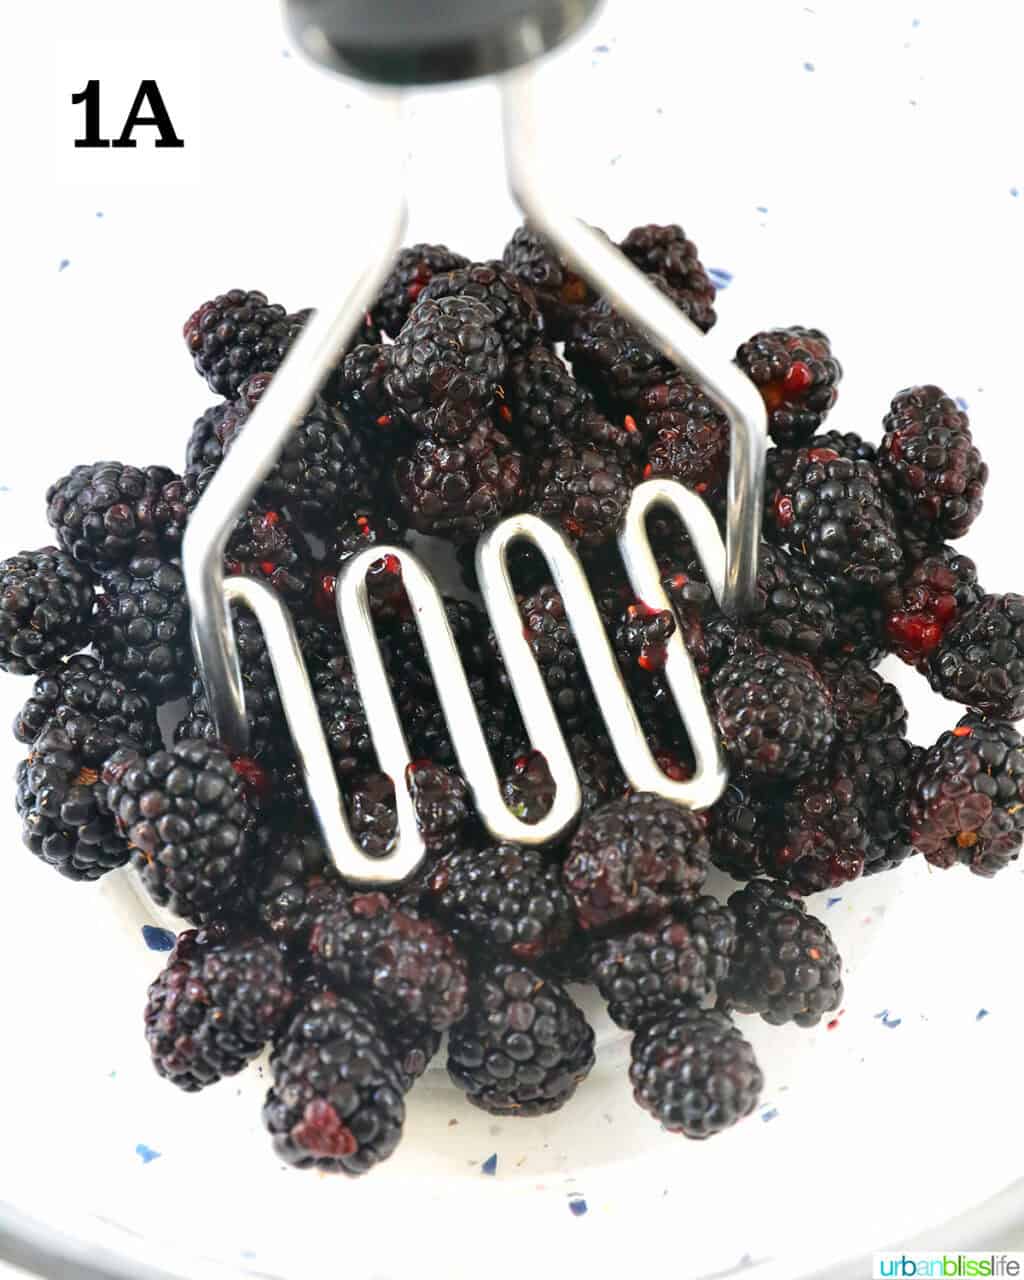 mashing blackberries to make jam.